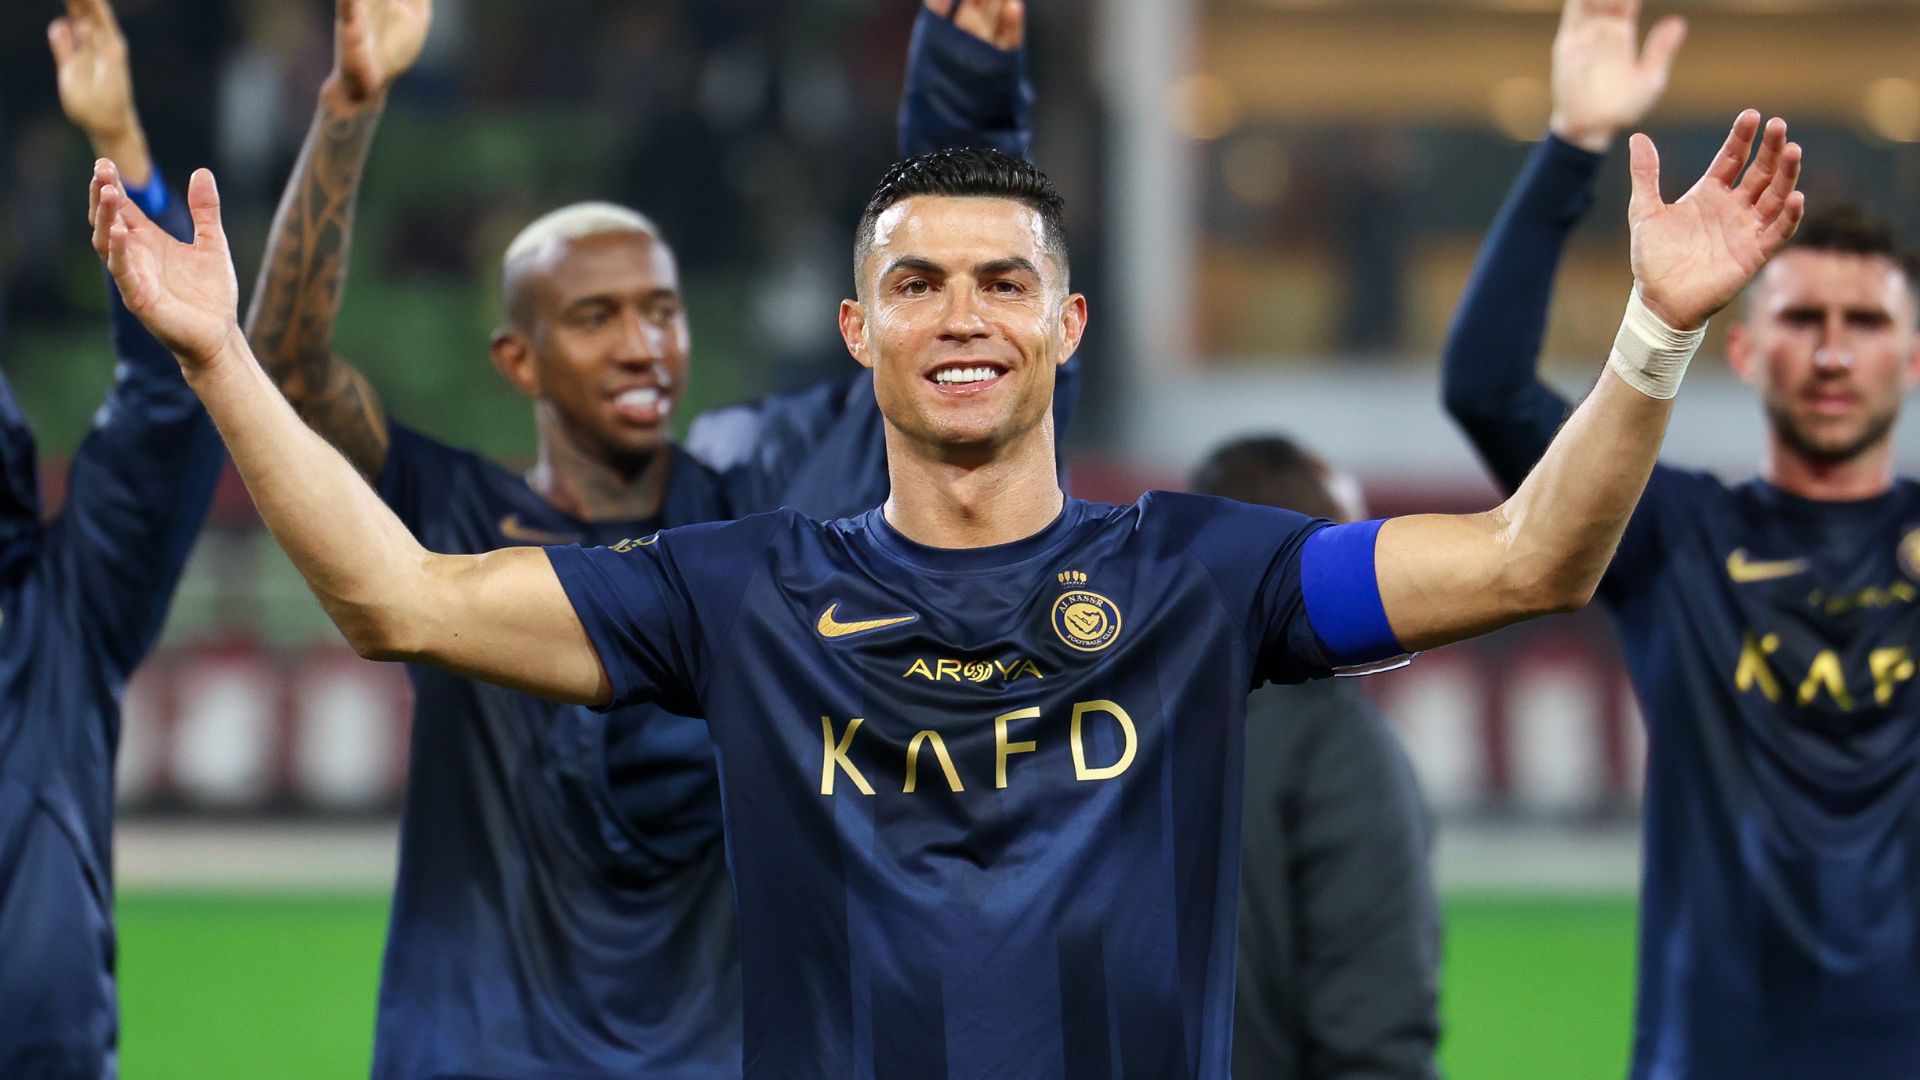 Cristiano Ronaldo comemorando vitória do Al Nassr junto com seus companheiros (Crédito: Getty Images)